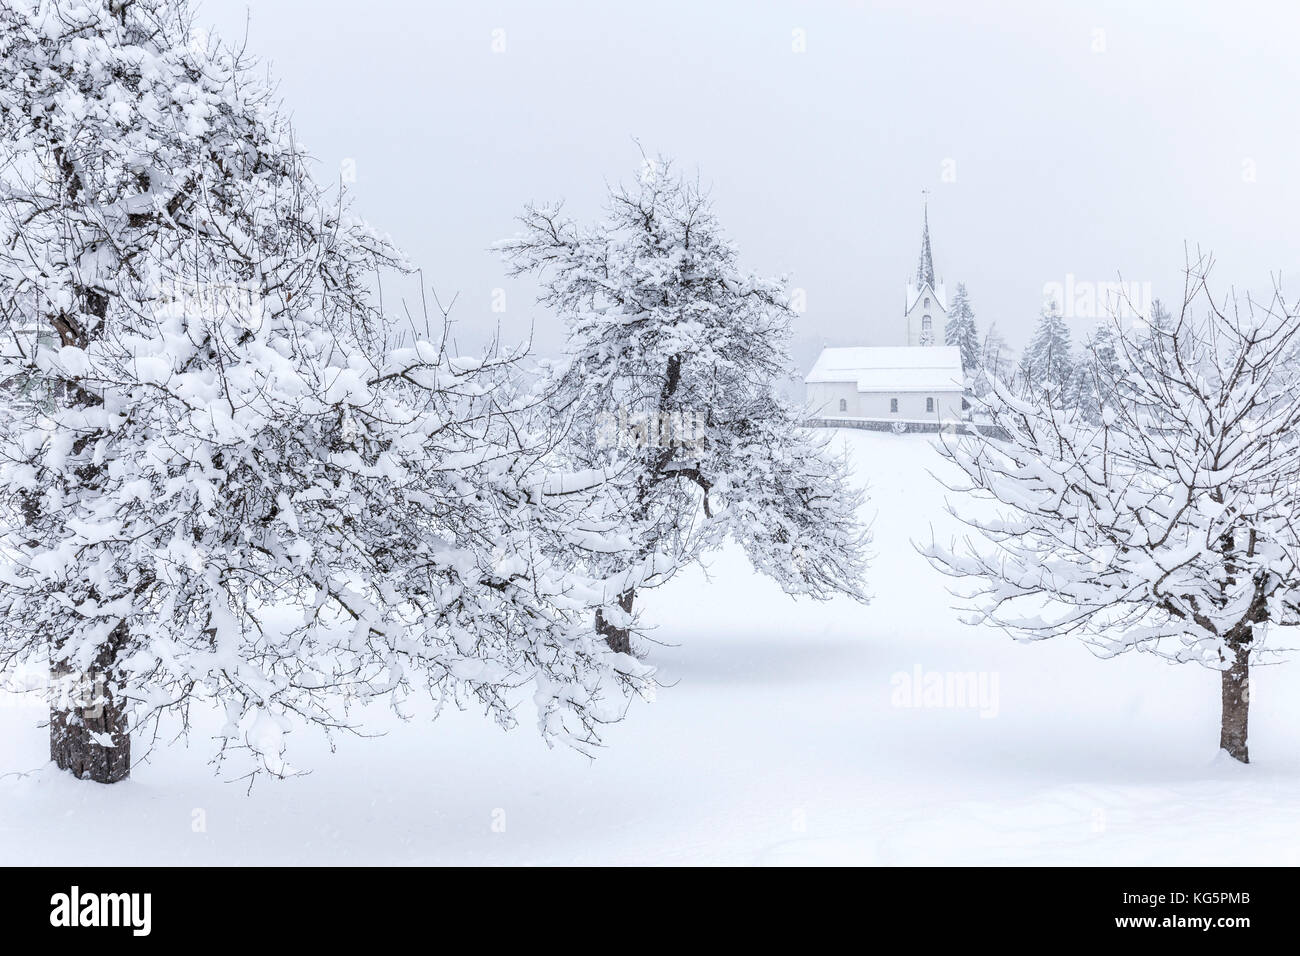 Église de Versam parmi les arbres enneigés. Versam, Safiental, Surselva, Graubunden, Suisse, Europe Banque D'Images